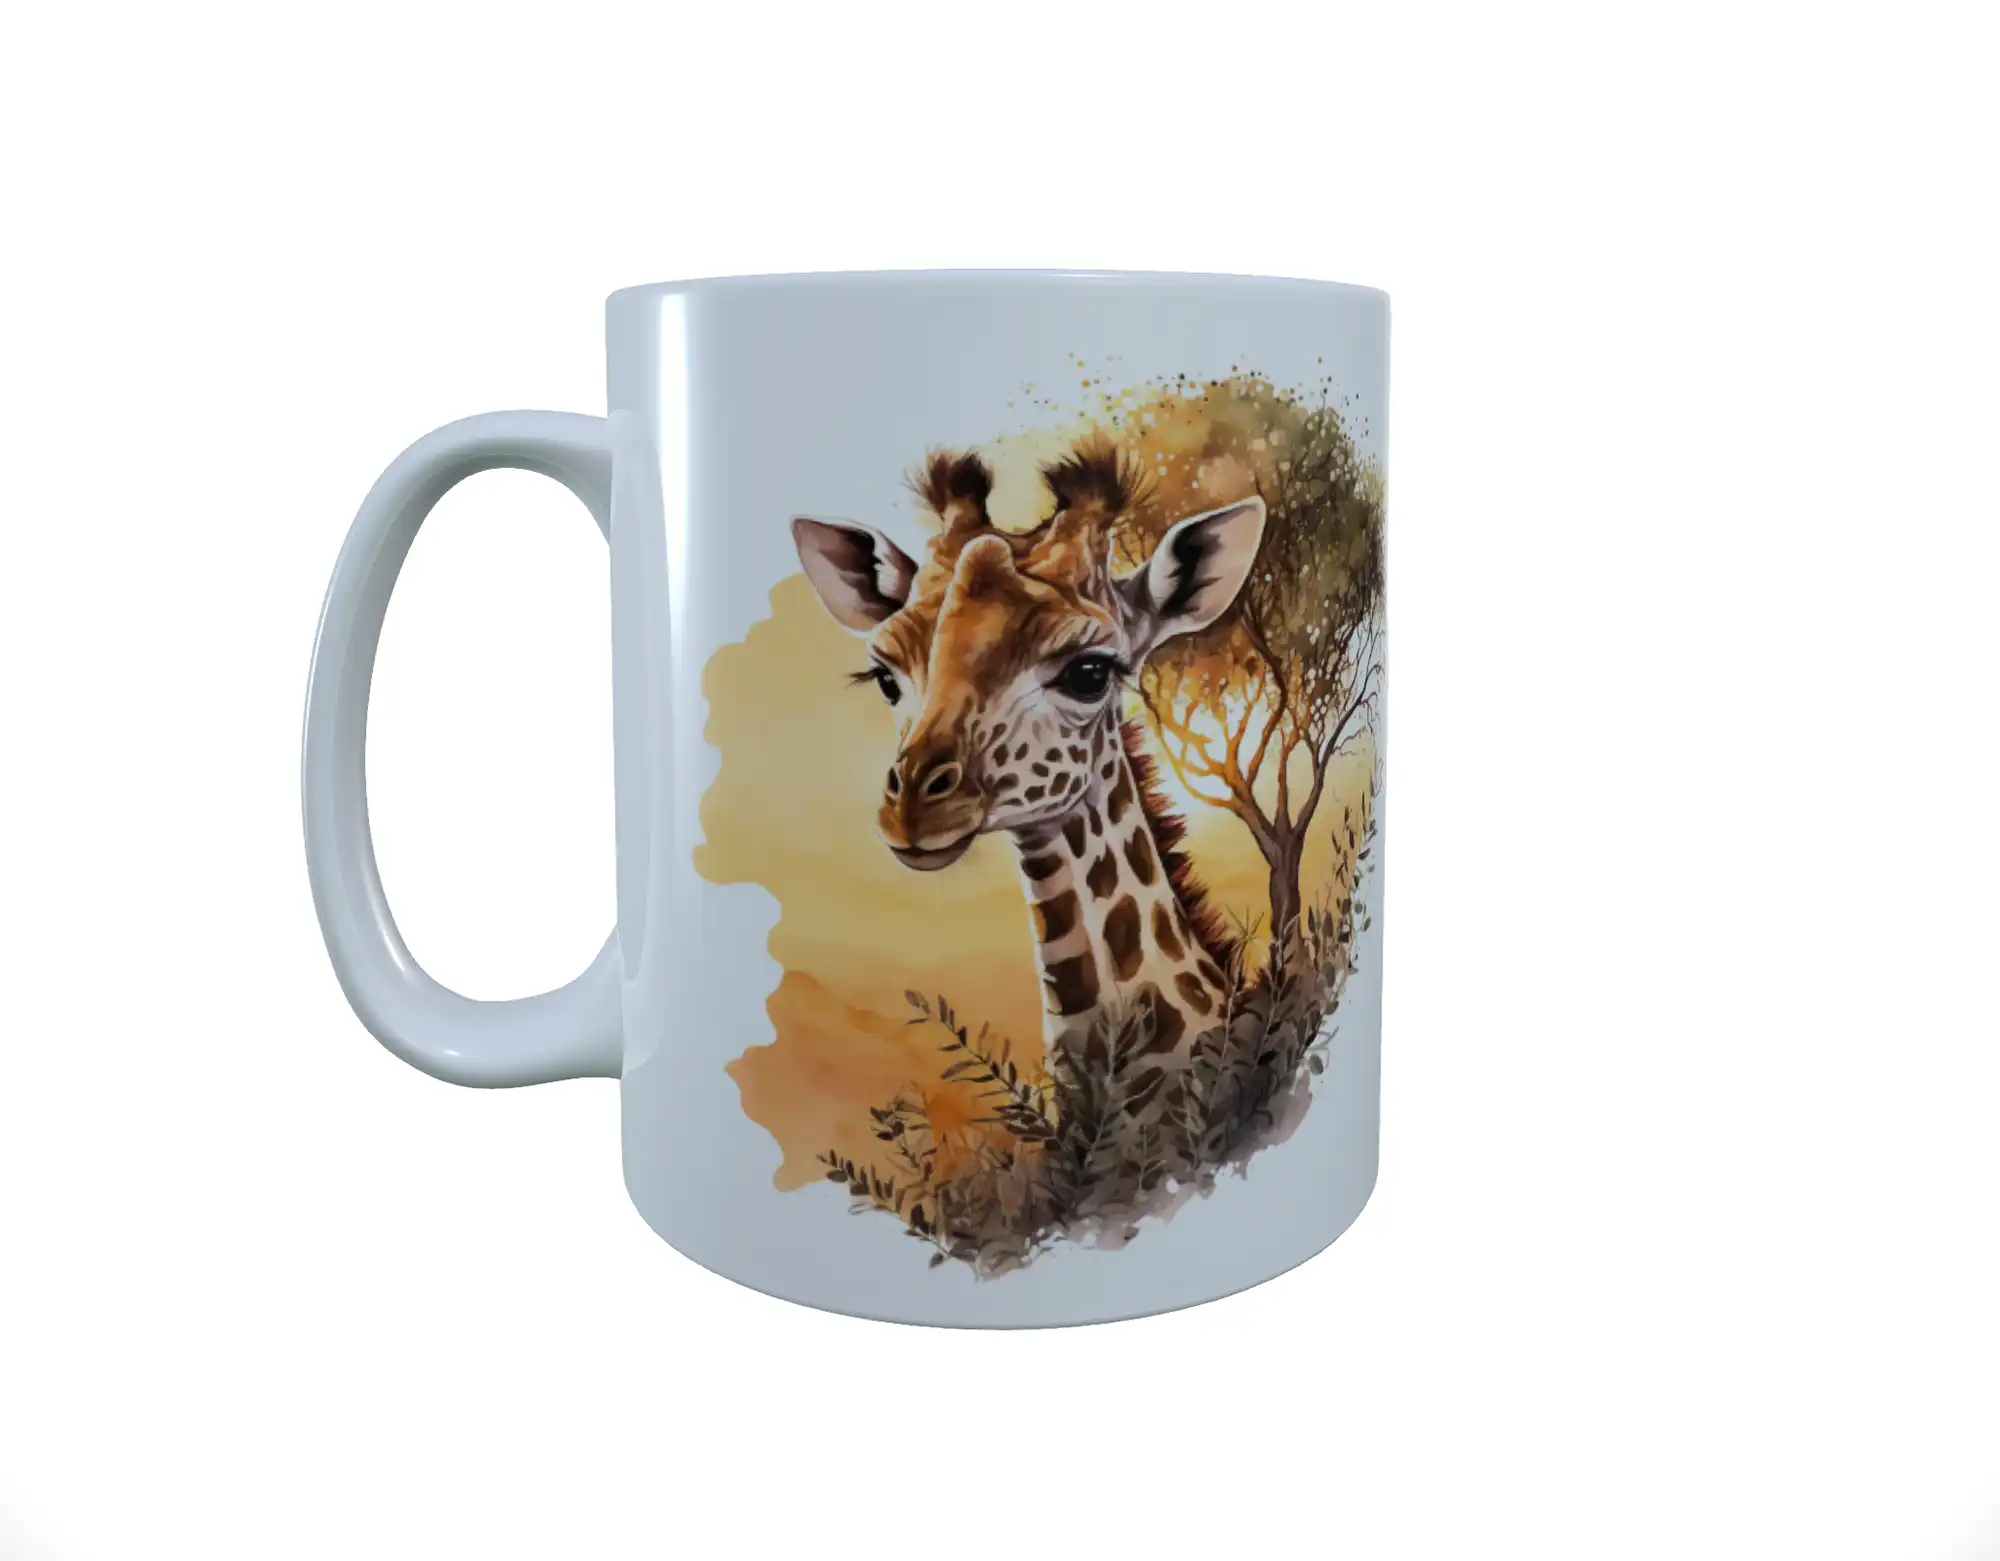 Giraffe Ceramic Mug, Baby Giraffe Mug, Giraffe Latte Mug